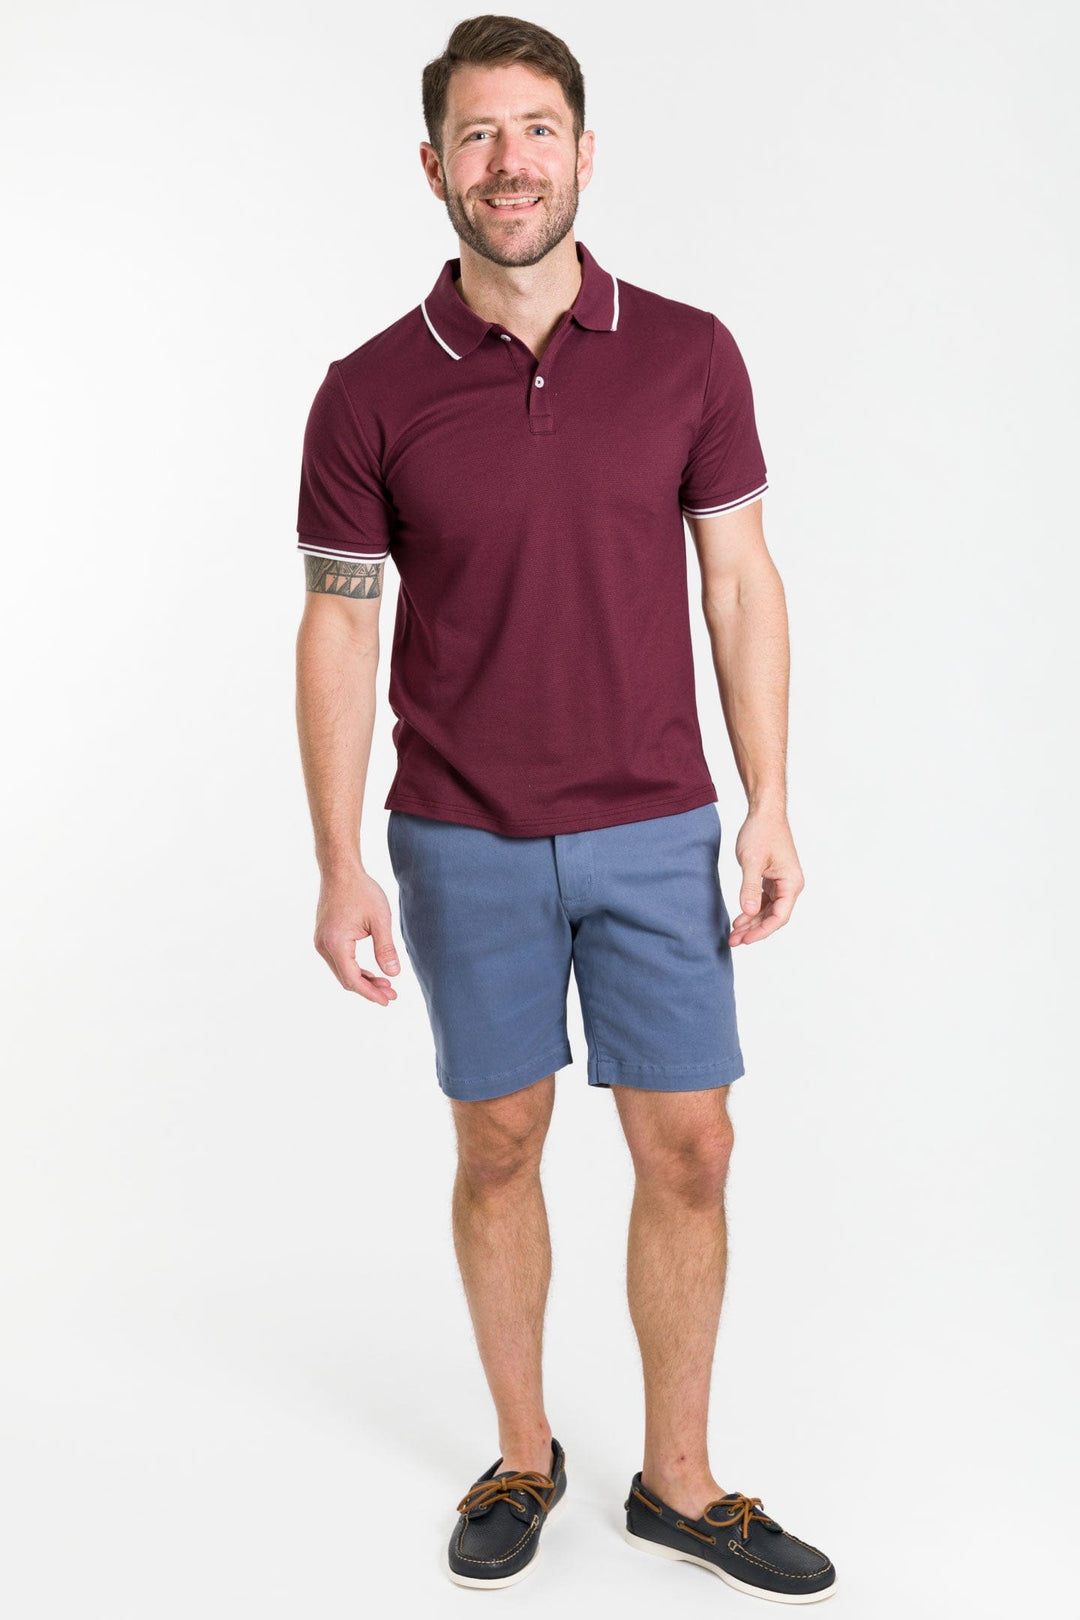 Buy Burgundy Micro Pique Polo Shirt for Short Men | Ash & Erie   Polo Shirt